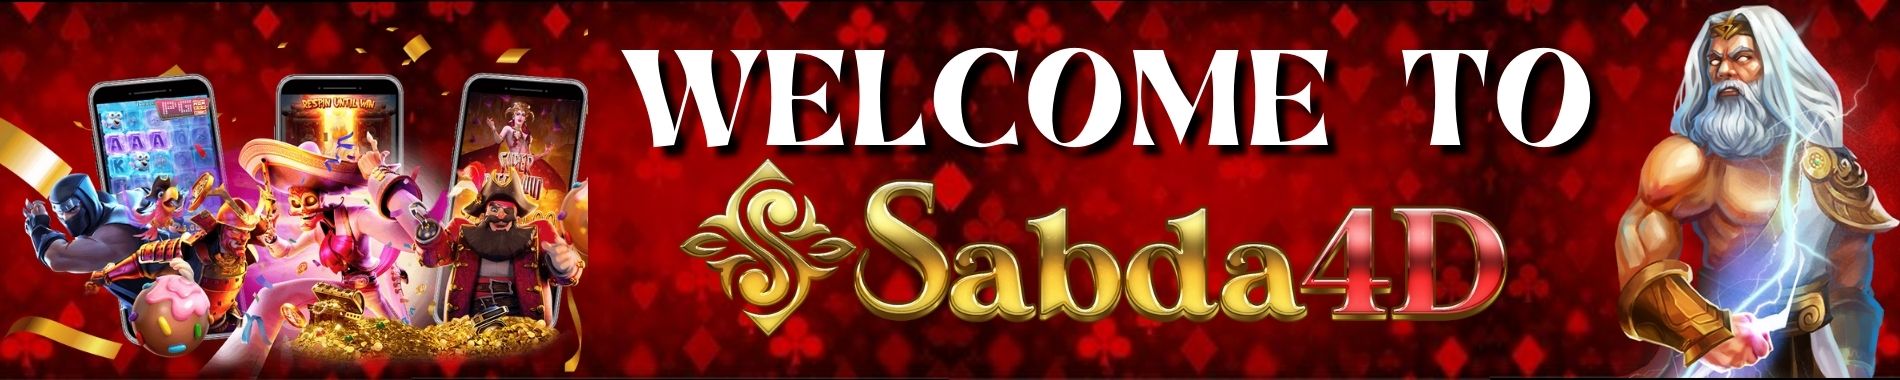 WELCOME TO SABDA4D